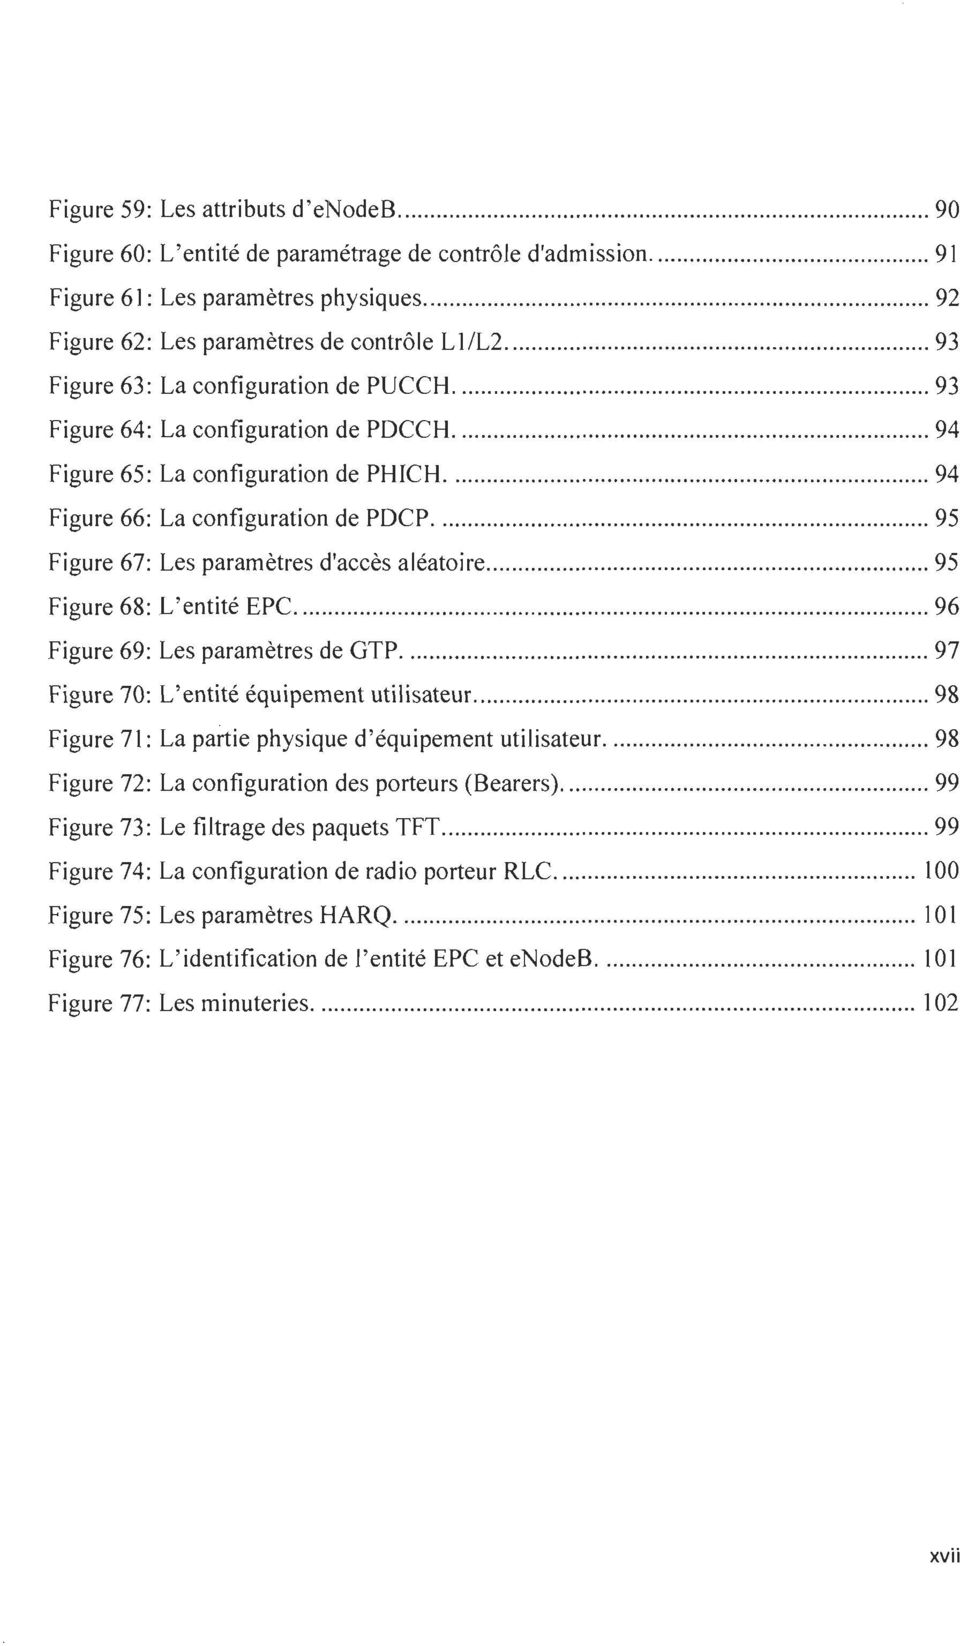 ... 95 Figure 67: Les paramètres d'accès aléatoire... 95 Figure 68: L' entité EPC... 96 Figure 69: Les paramètres de GTP... 97 Figure 70: L'entité équipement utilisateur.